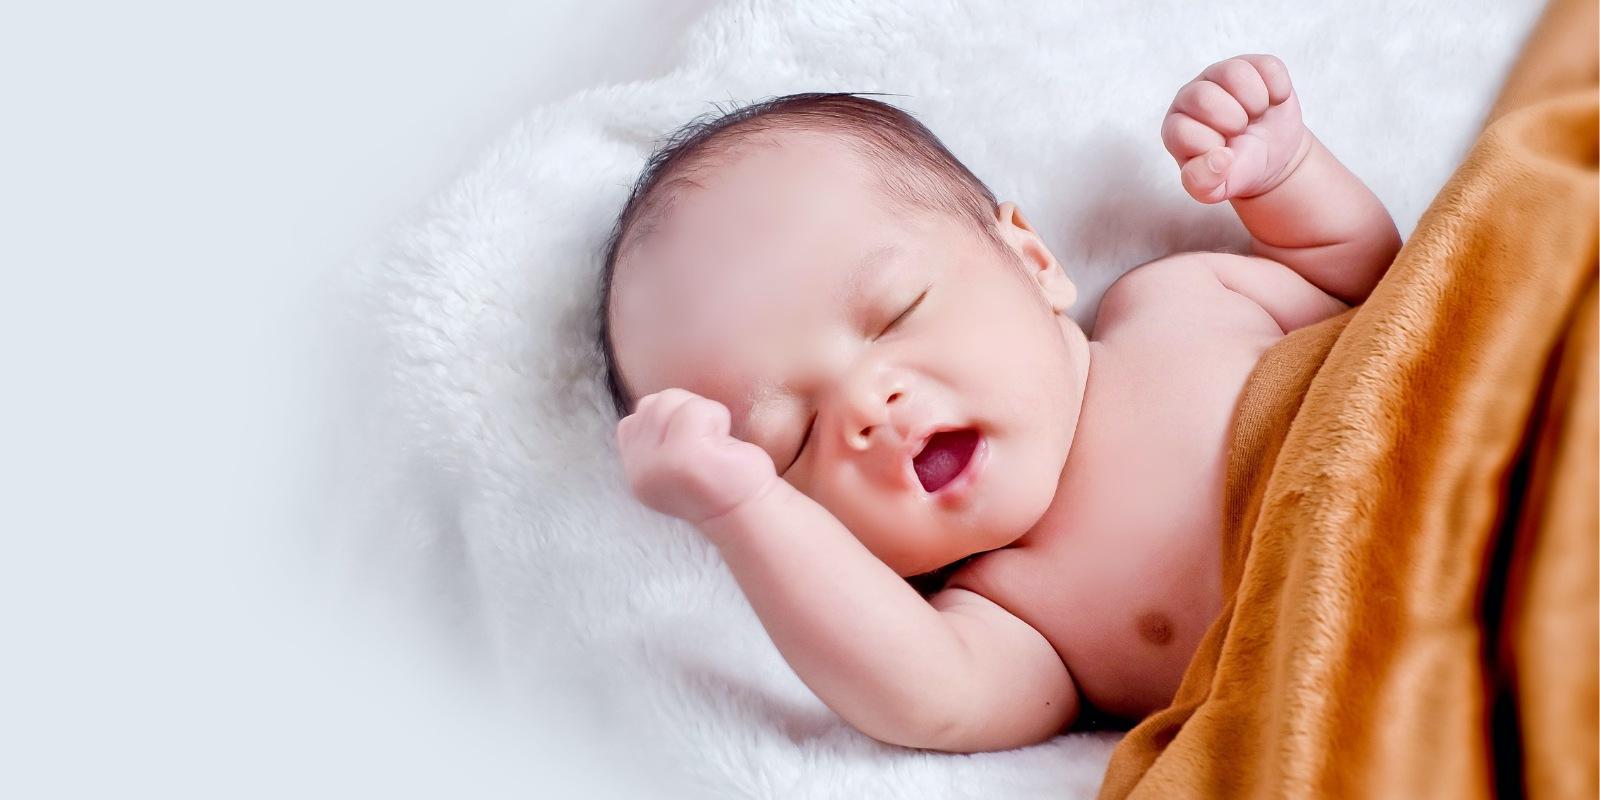 Kosmetika pro miminko těsně po porodu: kdy stačí jen voda?